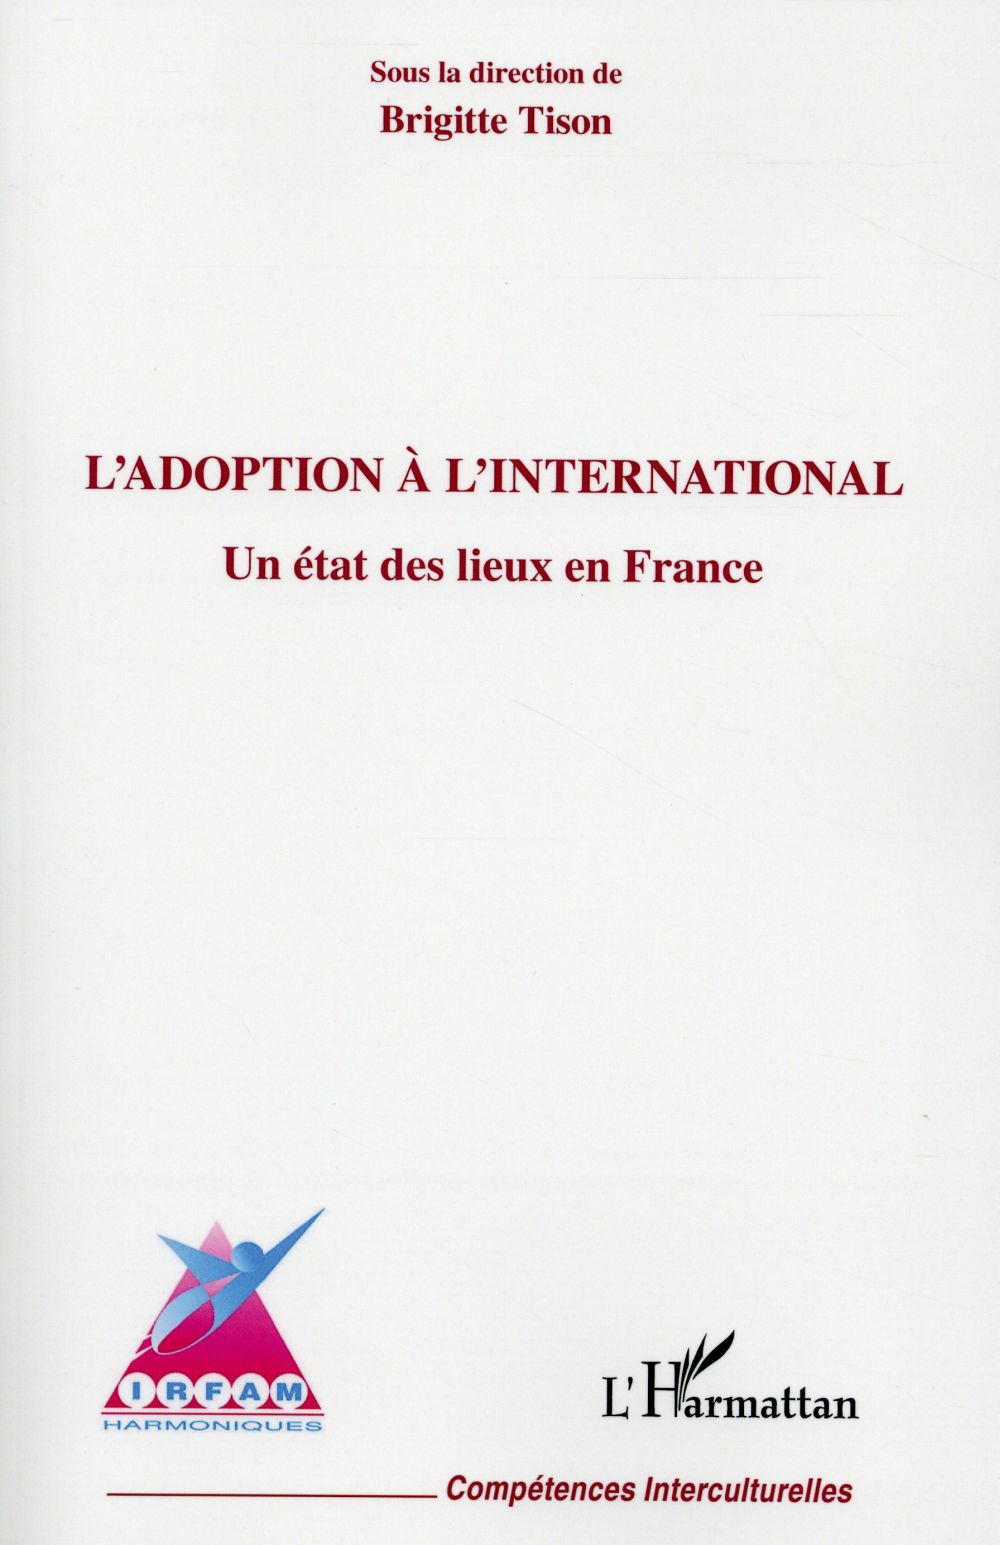 L'ADOPTION A L'INTERNATIONAL - UN ETAT DES LIEUX EN FRANCE